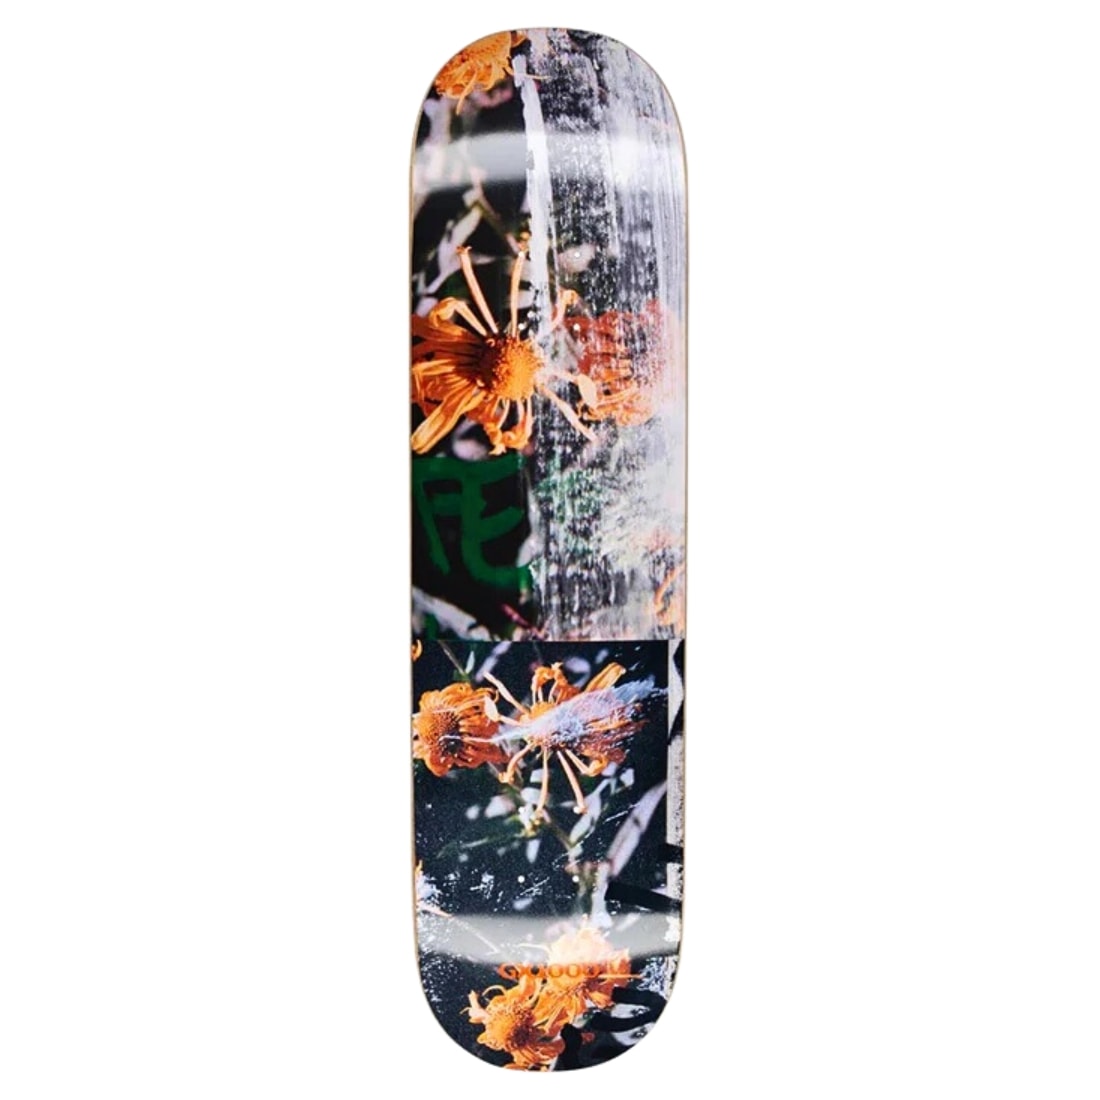 Gx1000 8.5" Flowers Deck - Multi - Skateboard Deck by GX1000 8.5 inch